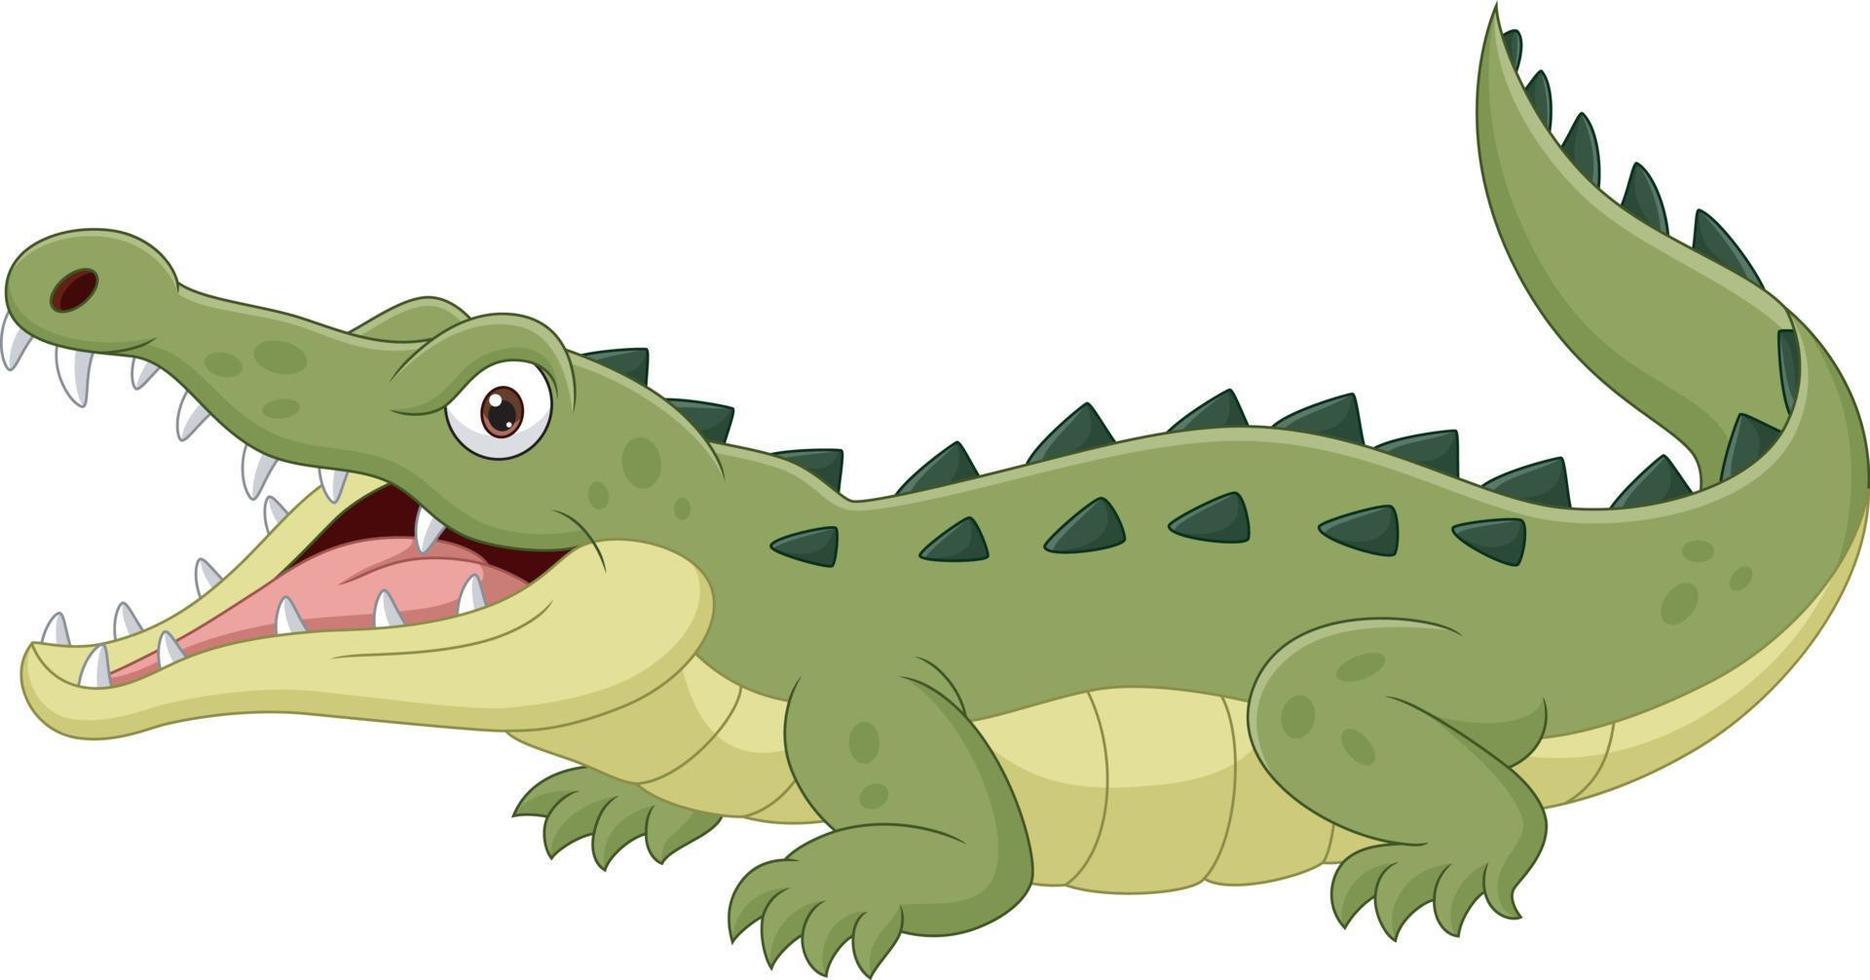 Crocodile de dessin animé isolé sur fond blanc vecteur